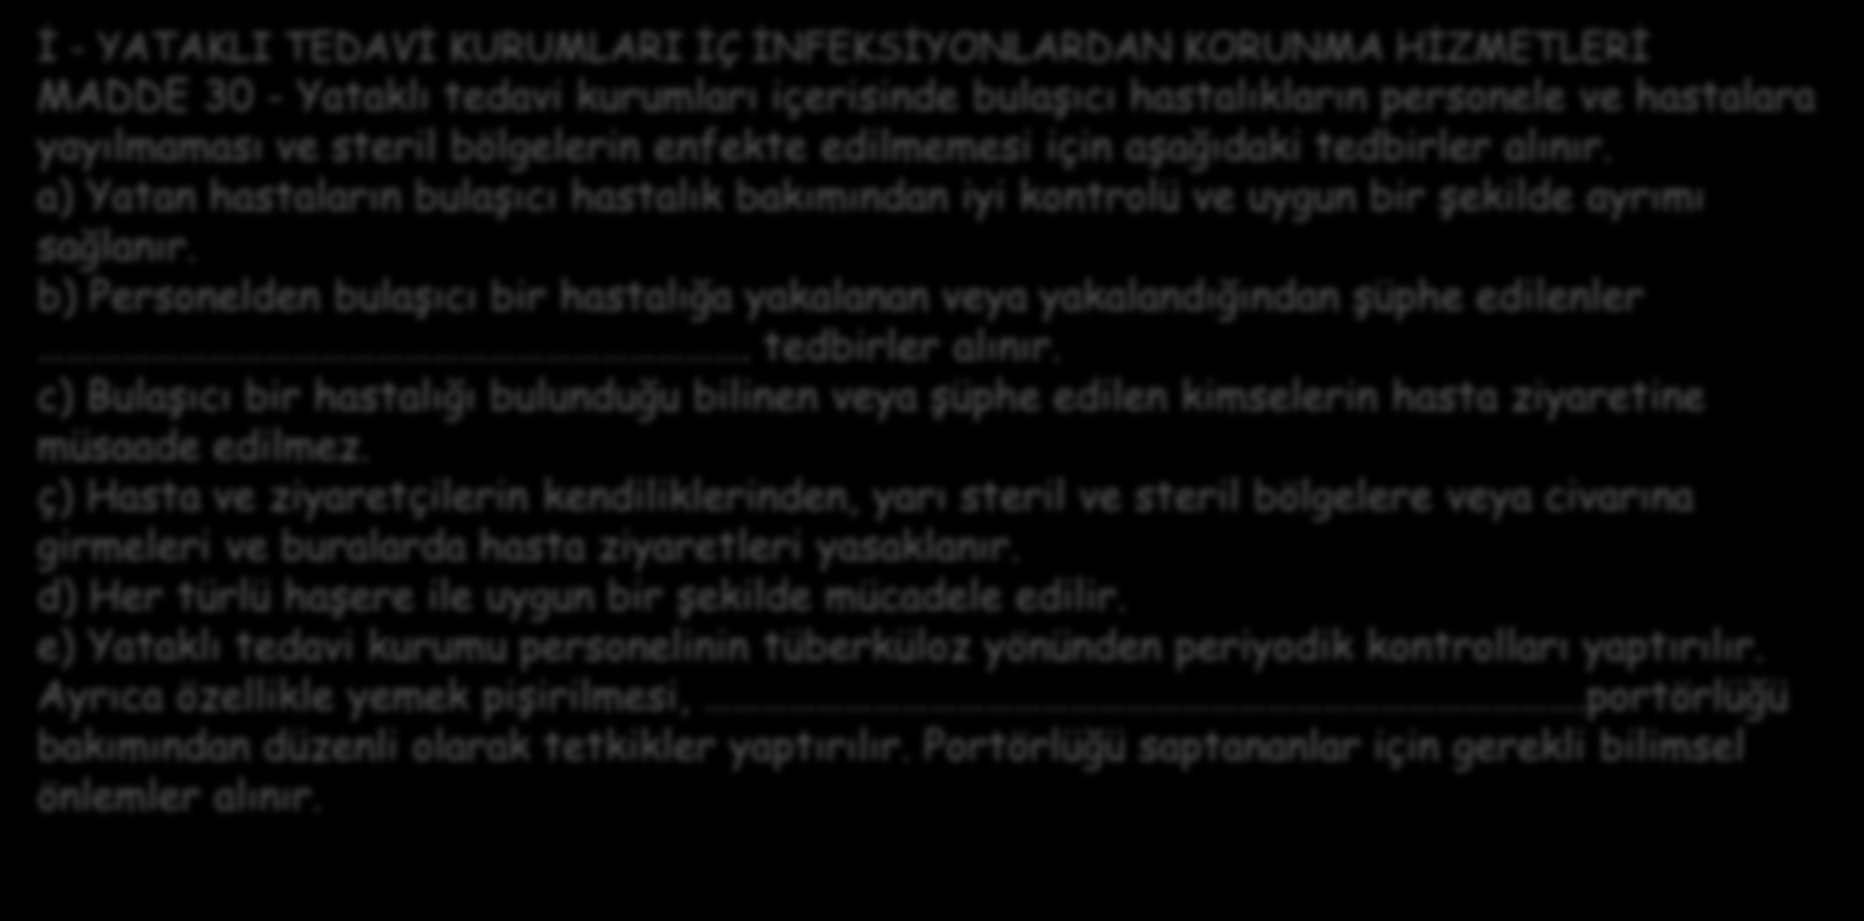 Tarihçe - Türkiye 1983 Yataklı Tedavi Kurumları İşletme Yönetmeliği (13/01/1983 tarihli 17927 sayılı Resmi Gazete) İ - YATAKLI TEDAVİ KURUMLARI İÇ İNFEKSİYONLARDAN KORUNMA HİZMETLERİ MADDE 30 -